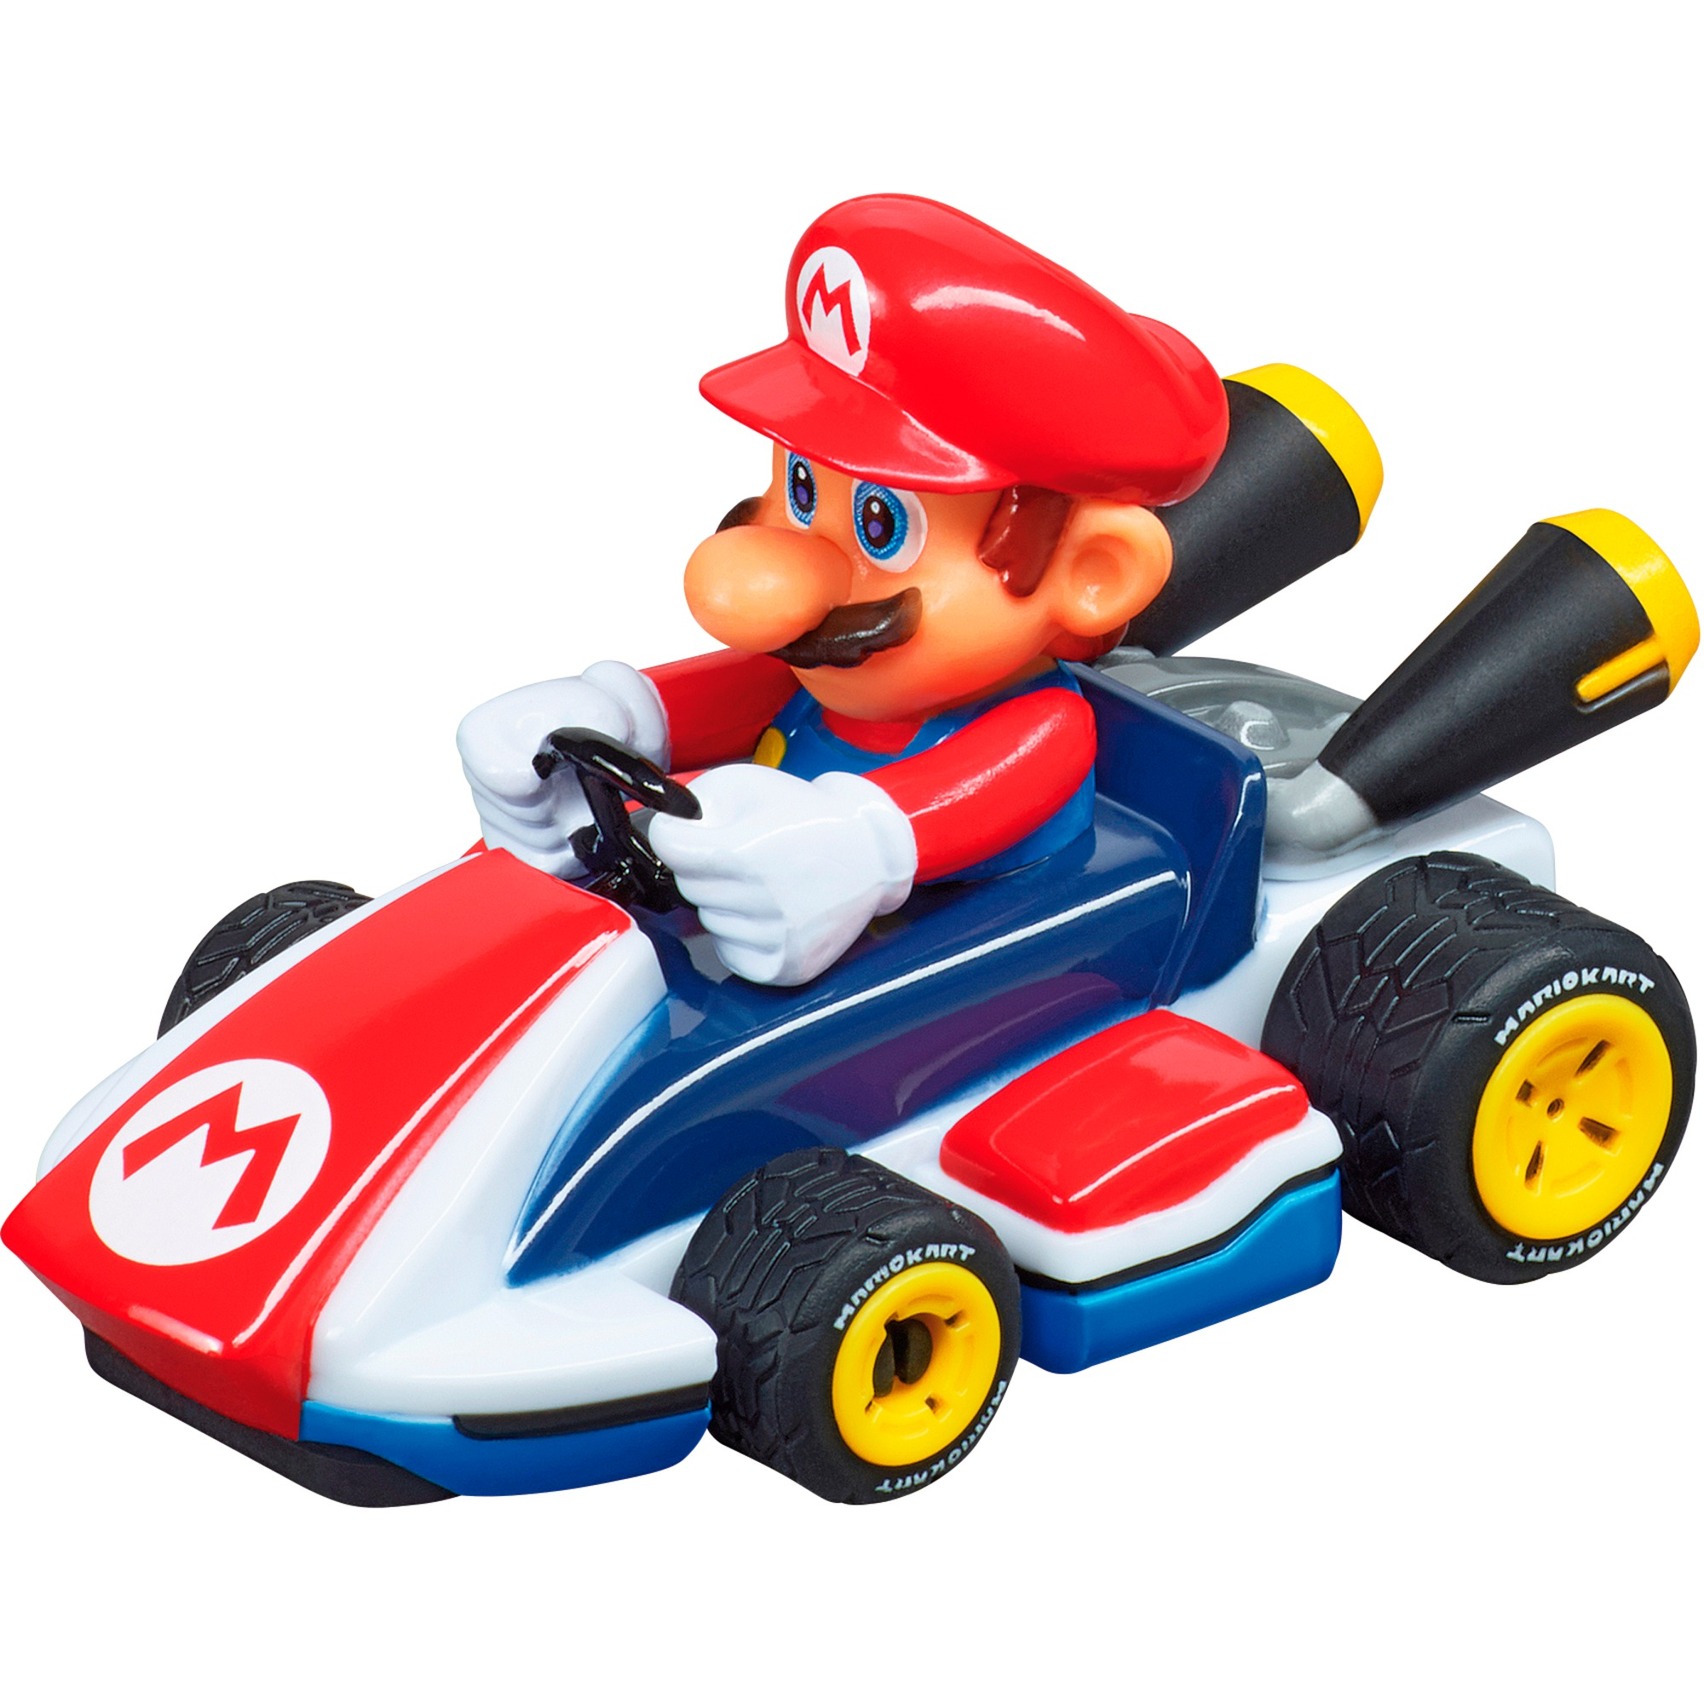 Spielzeug: Carrera FIRST Nintendo Mario Kart - Mario, Rennwagen